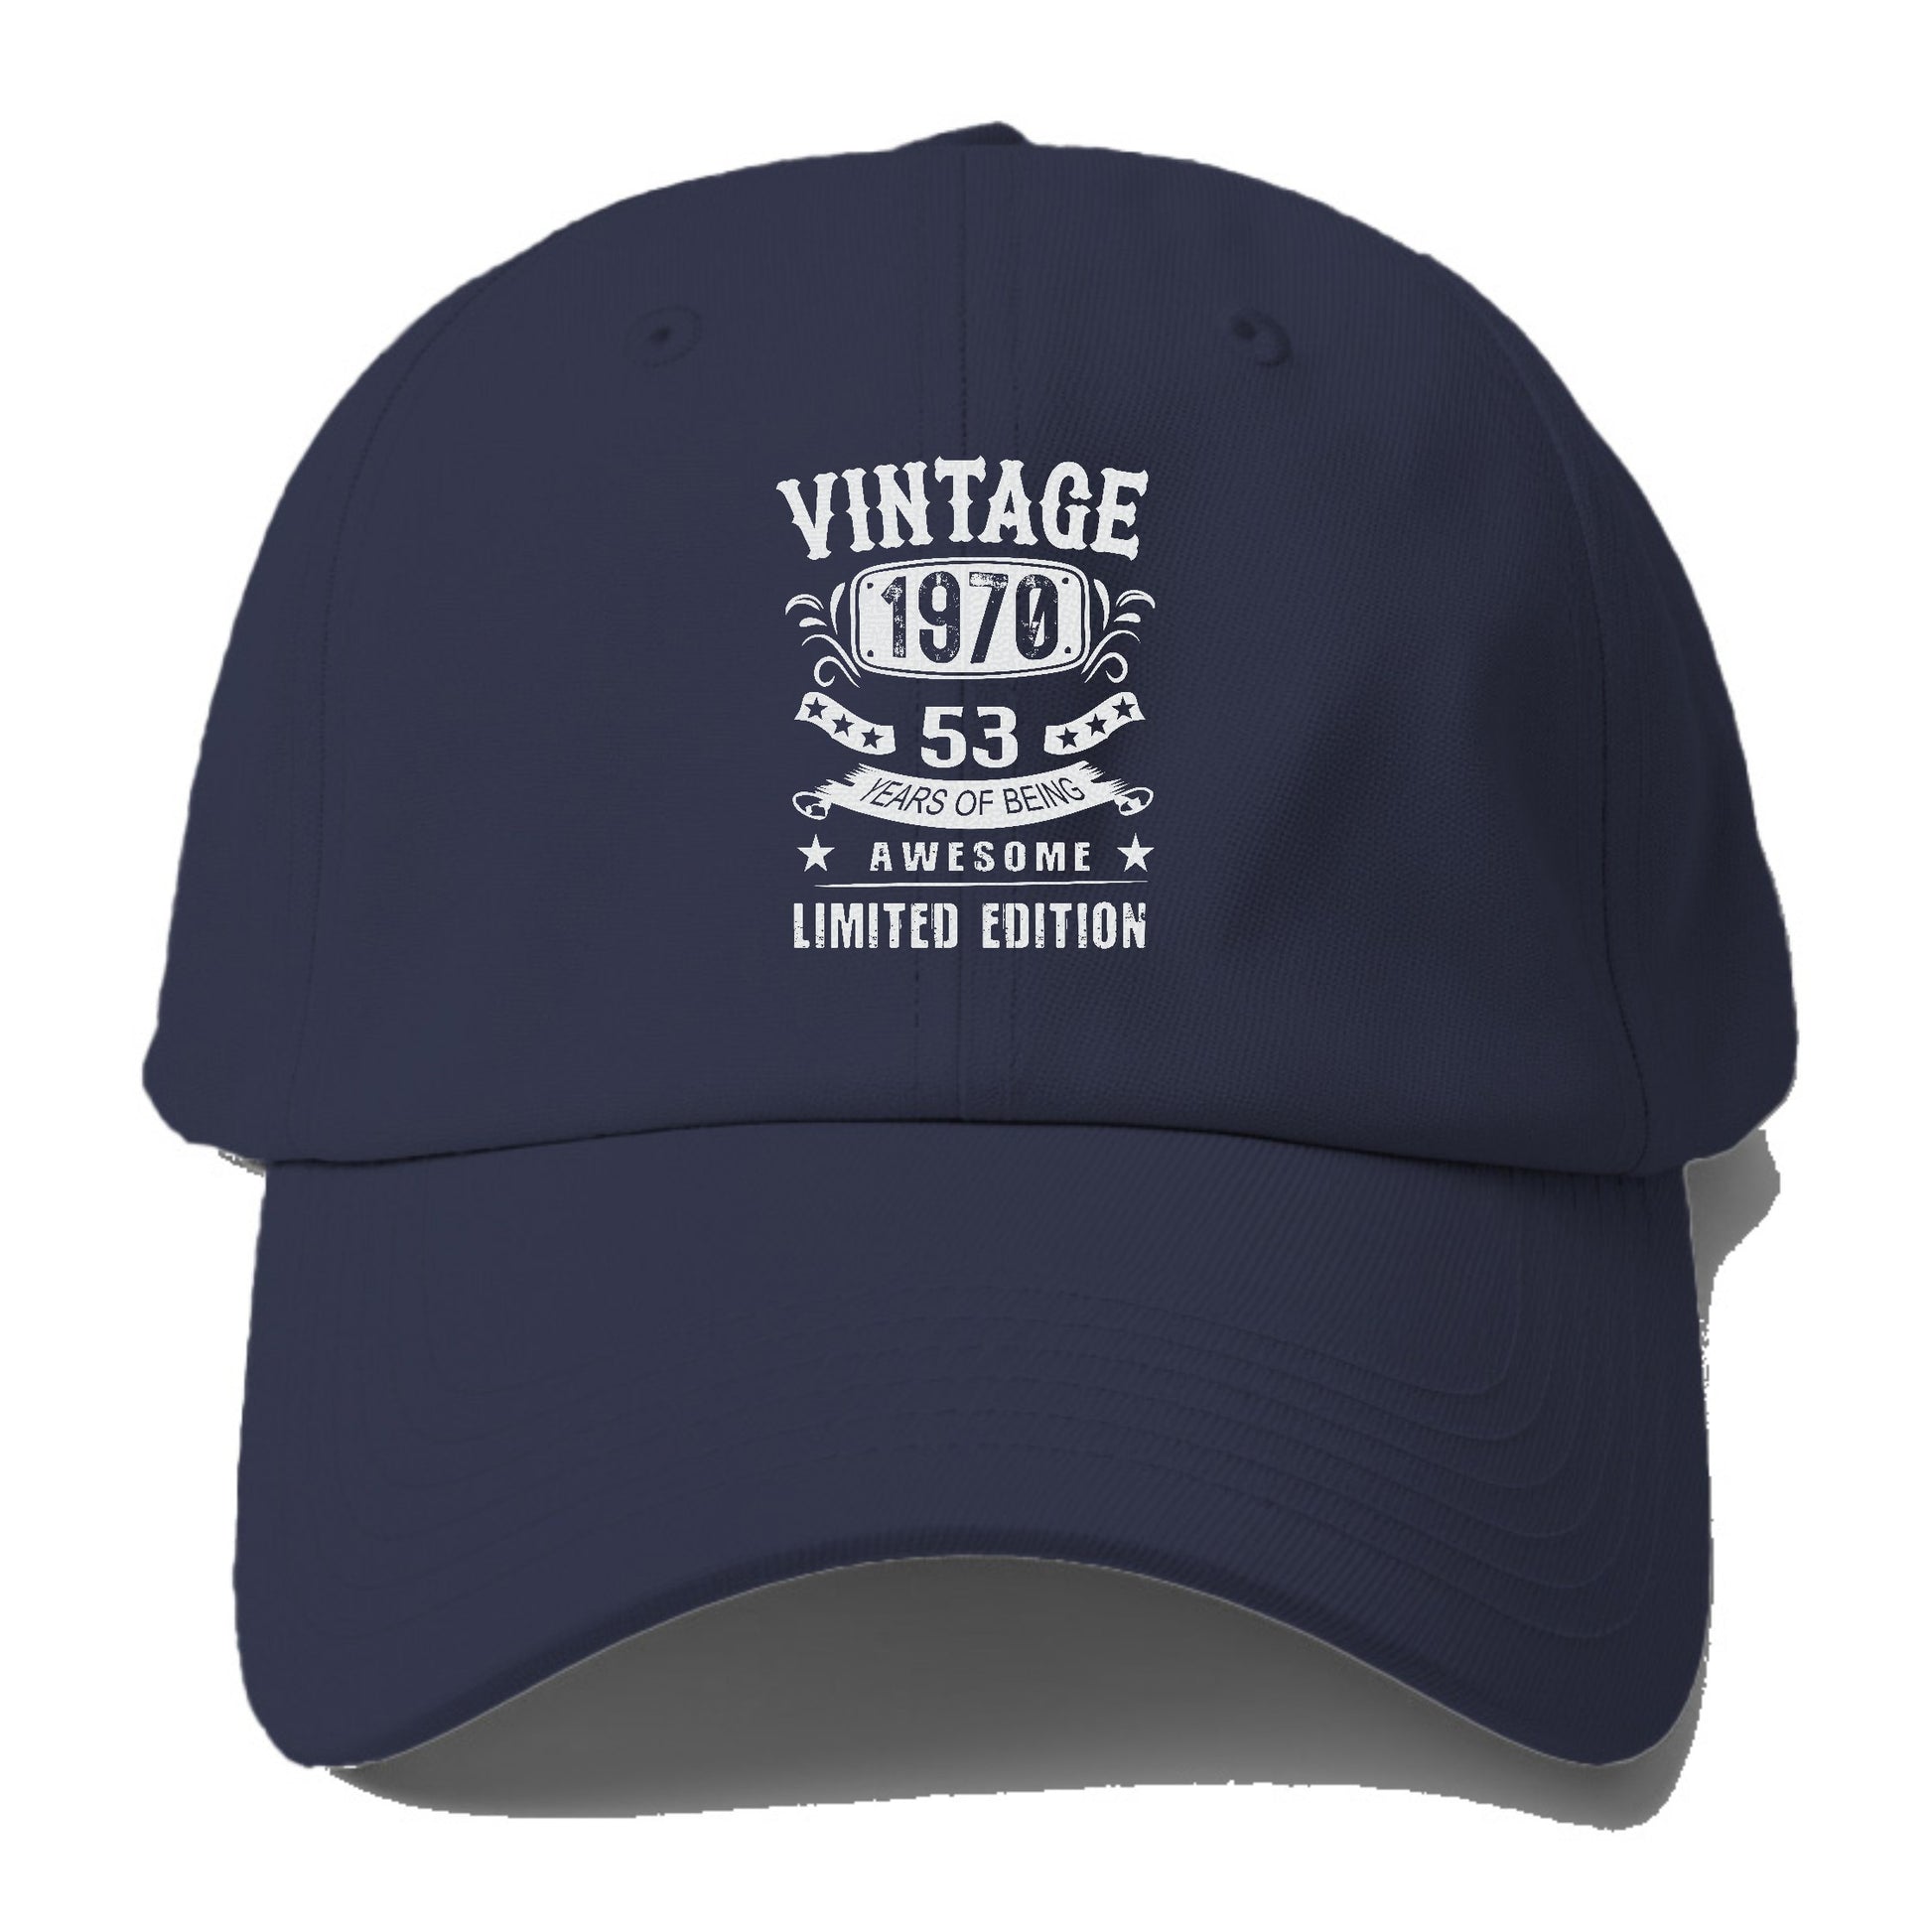 Hat Headz Special Edition Trucker Hat